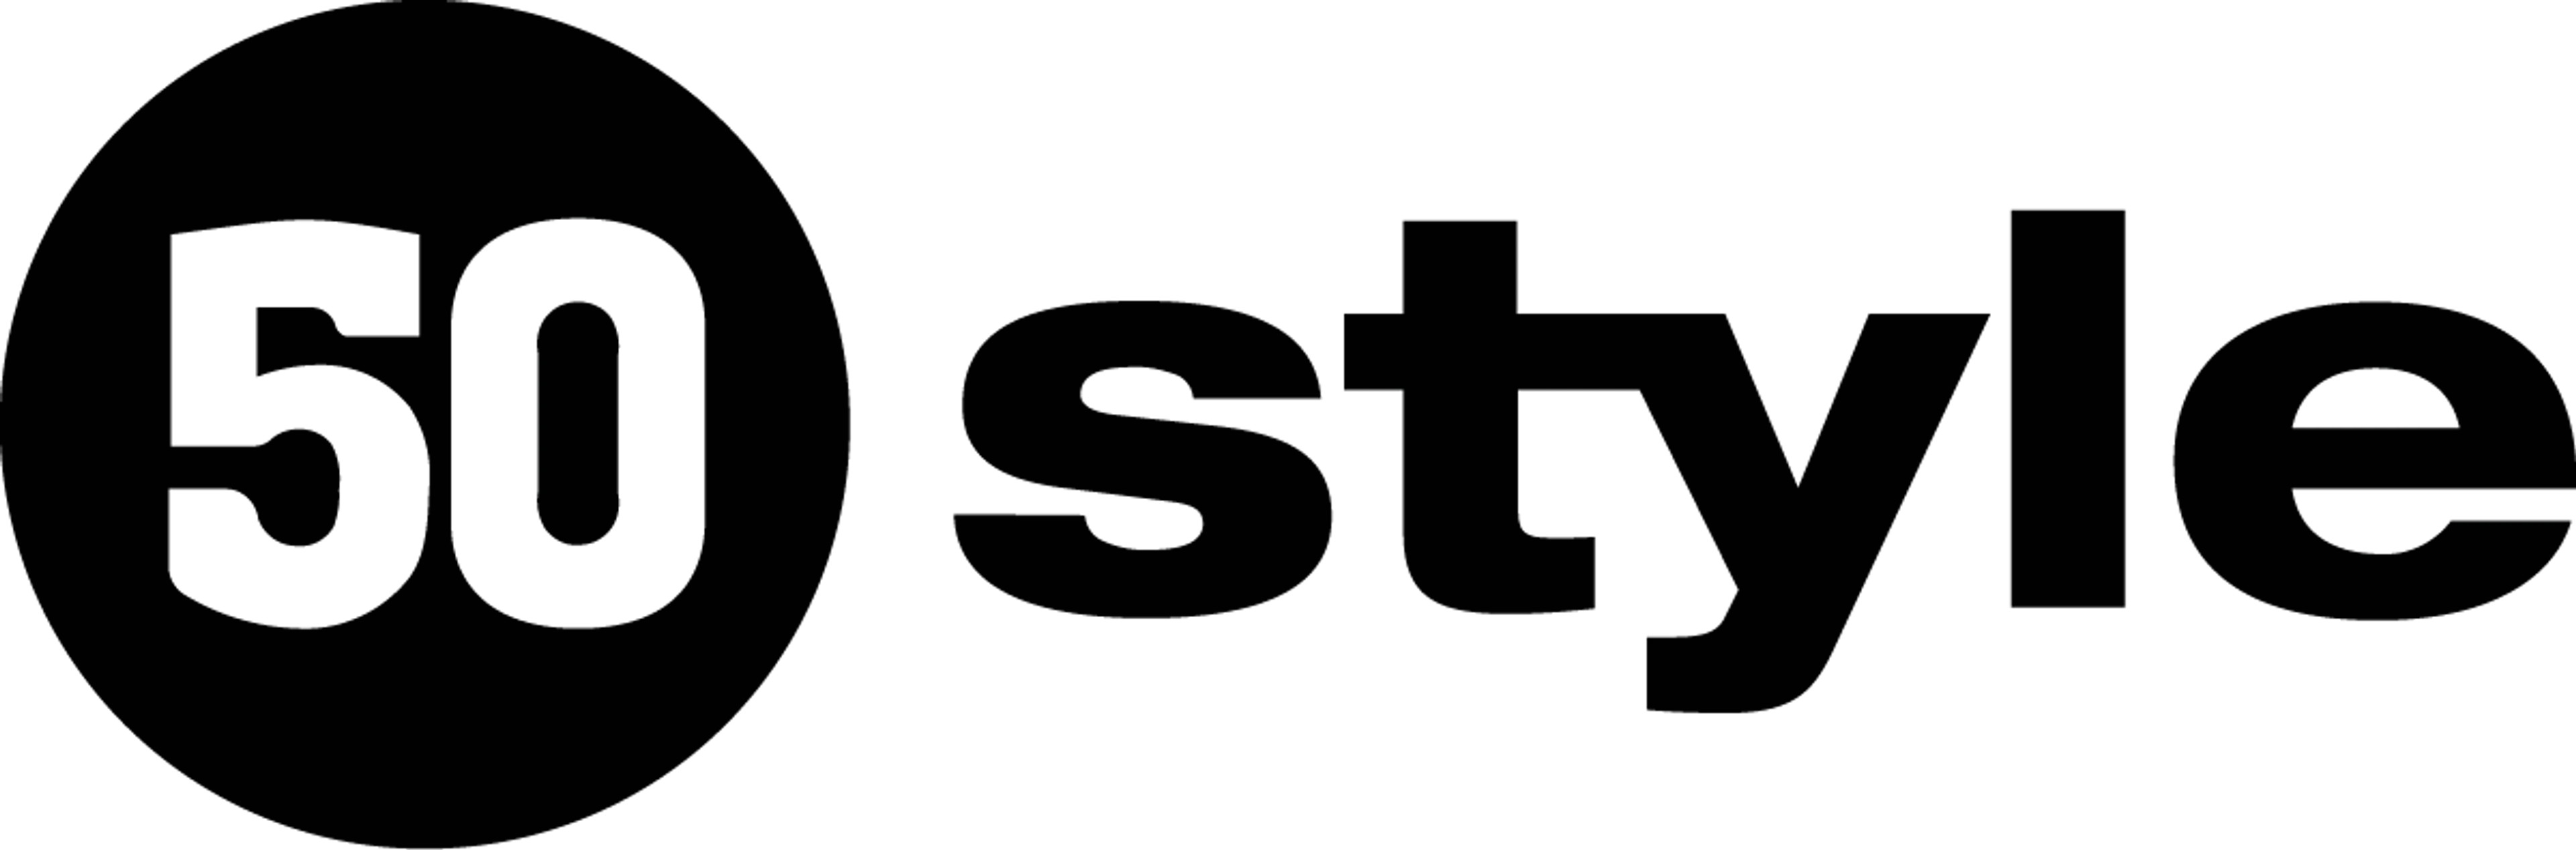 50 STYLE logo